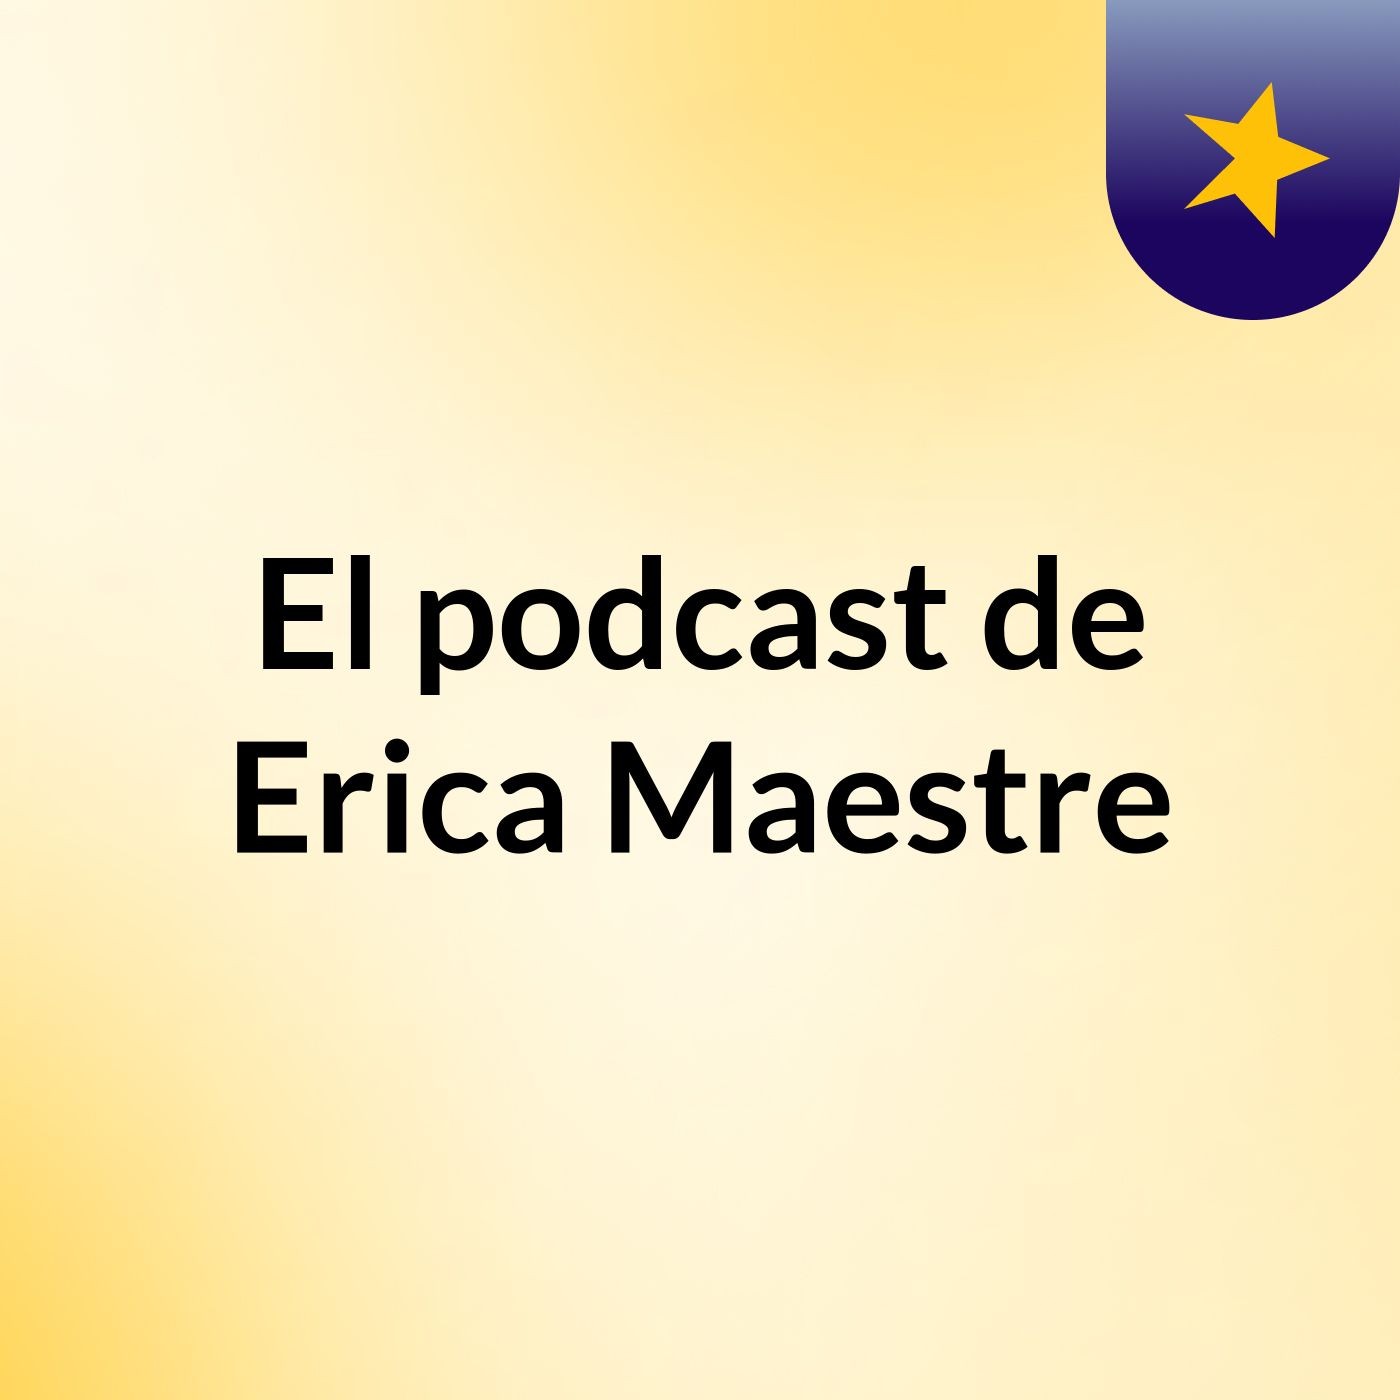 El podcast de Erica Maestre